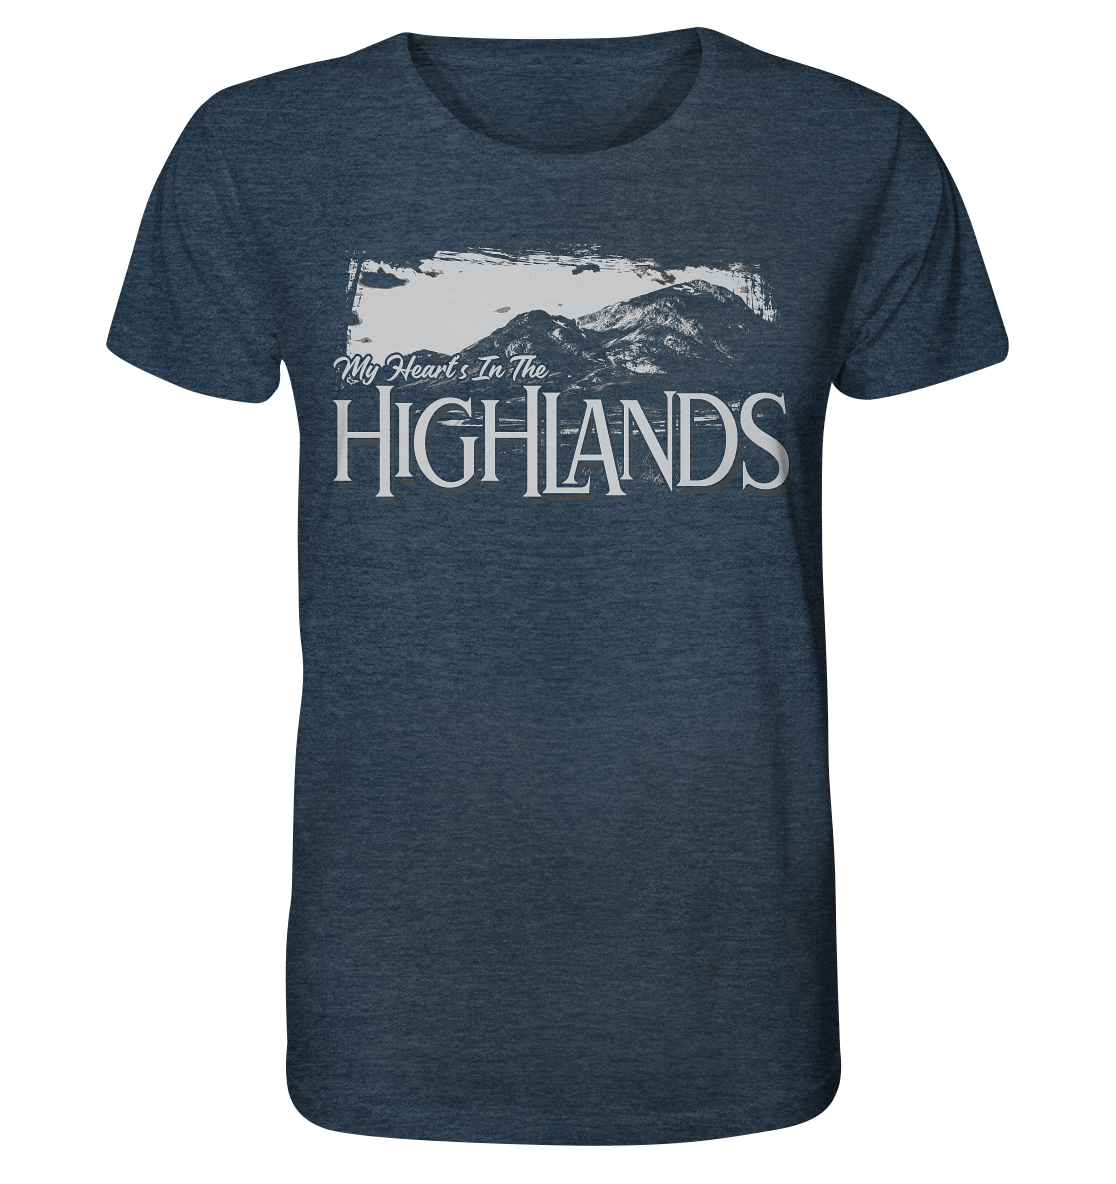 "My Heart's In The Highlands" - Organic Shirt (meliert)